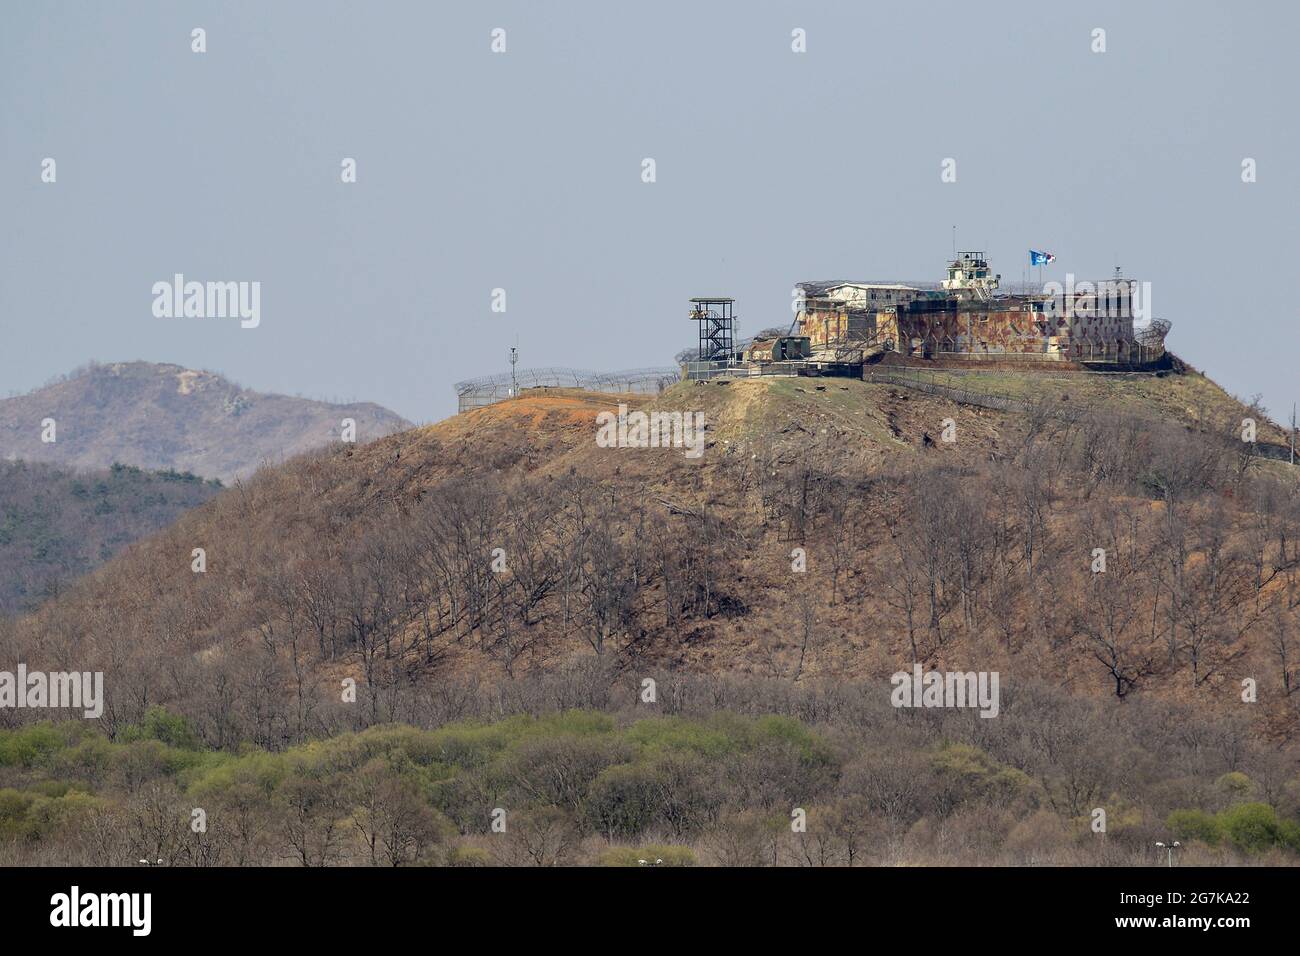 11 avril 2018-Goyang, Corée du Sud-UNE vue de la guerre de Corée bataille de cheval blanc et la ligne de contrôle civile à Cheorwon, Corée du Sud. La bataille de White Horse fut une autre d'une série de batailles sanglantes pour les positions dominantes sur les collines pendant la guerre de Corée. Baengma-goji était une colline de 395 mètres (1,296 pieds) dans le triangle de fer, formé par Pyonggang à son sommet et Gimhwa-eup et Cheorwon à sa base, était une voie de transport stratégique dans la région centrale de la péninsule coréenne. White Horse était la crête d'une masse de colline boisée qui s'étendait du nord-ouest au sud-est sur environ deux milles Banque D'Images